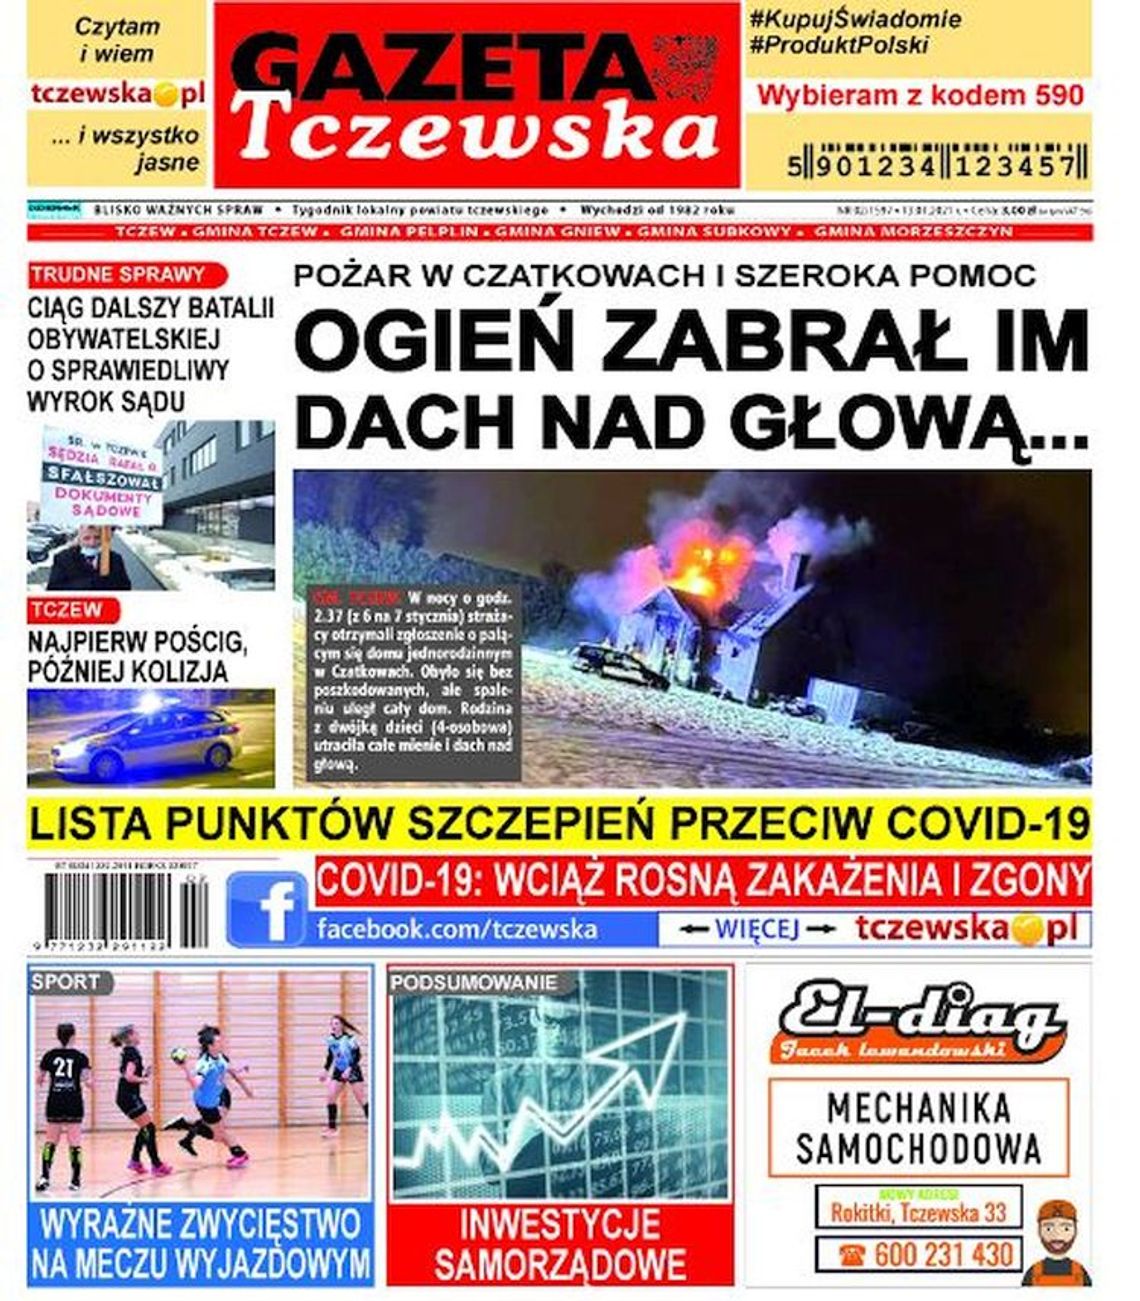 Najnowszy numer Gazety Tczewskiej już w sprzedaży. Świeże informacje z Tczewa i okolic naszego powiatu w Twoim kiosku. Co w środku?